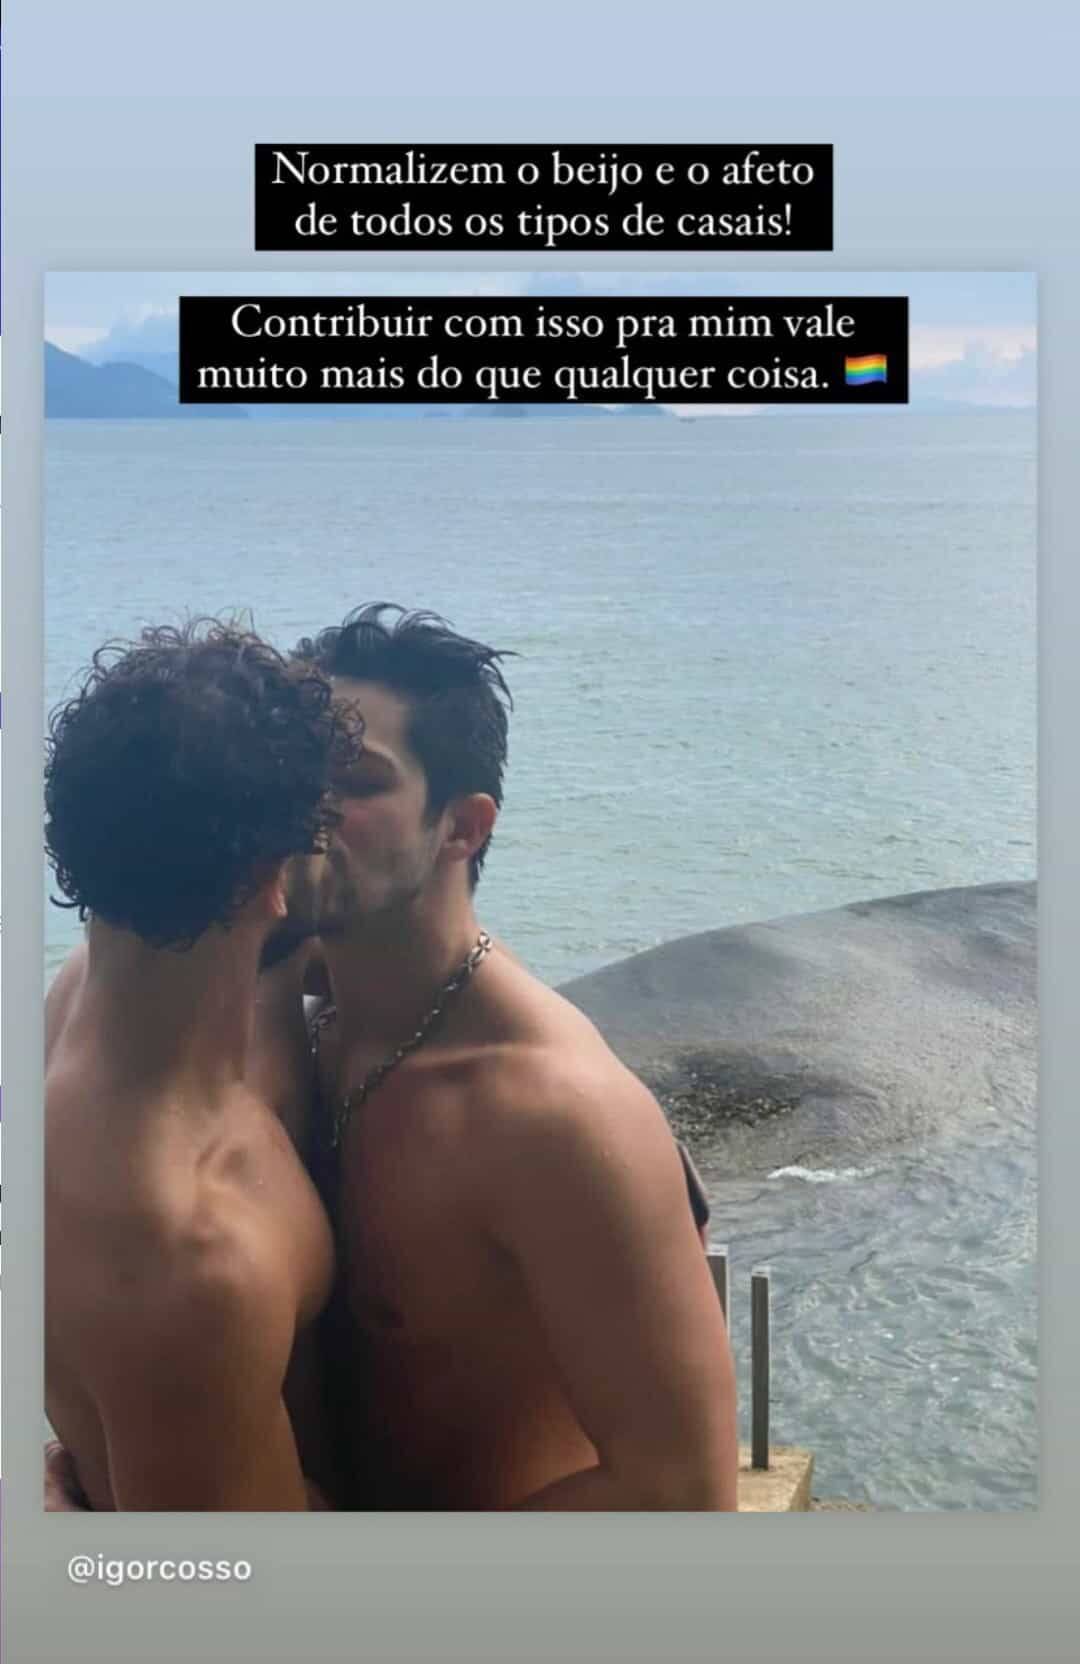 Igor Cosso perde seguidores após clique beijando o namorado: 'normalizem o afeto' (Foto: Reprodução/Instagram)